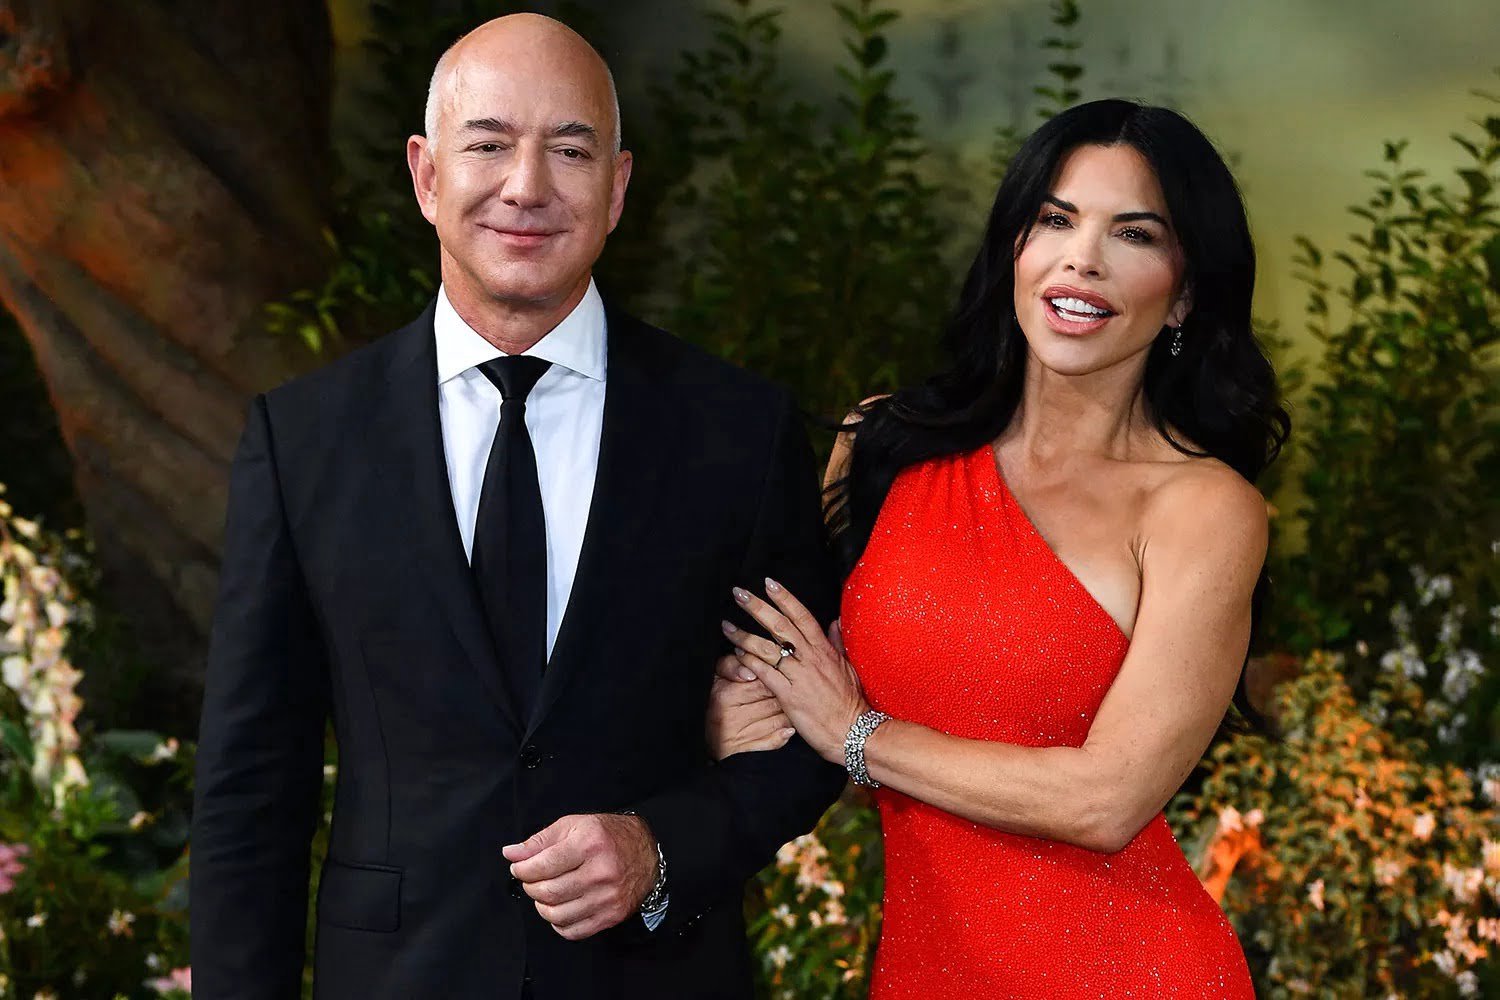 Jeff Bezos Puts Up Passionate PDA With Lauren Sanchez After 20-Carat Diamond Proposal